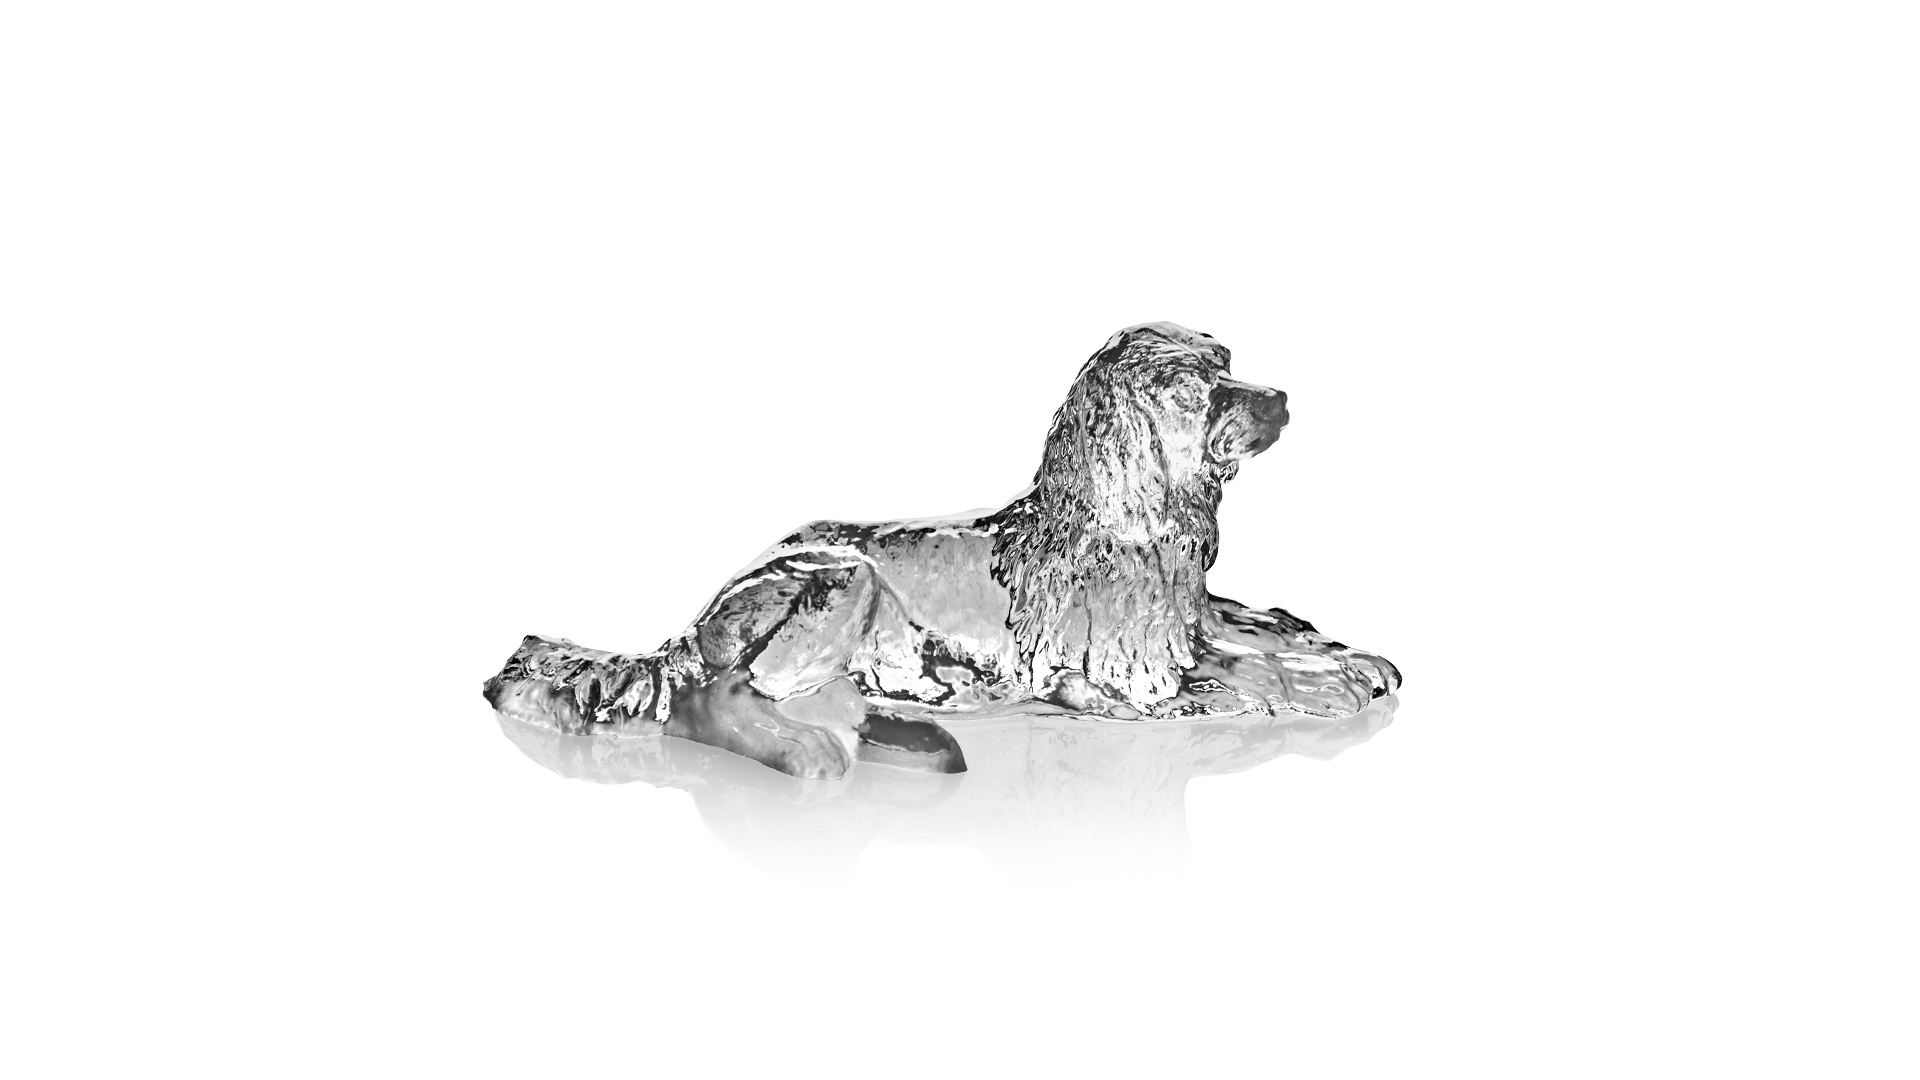 Фигурка Cristal de Paris Собака лежащая 6х10 см